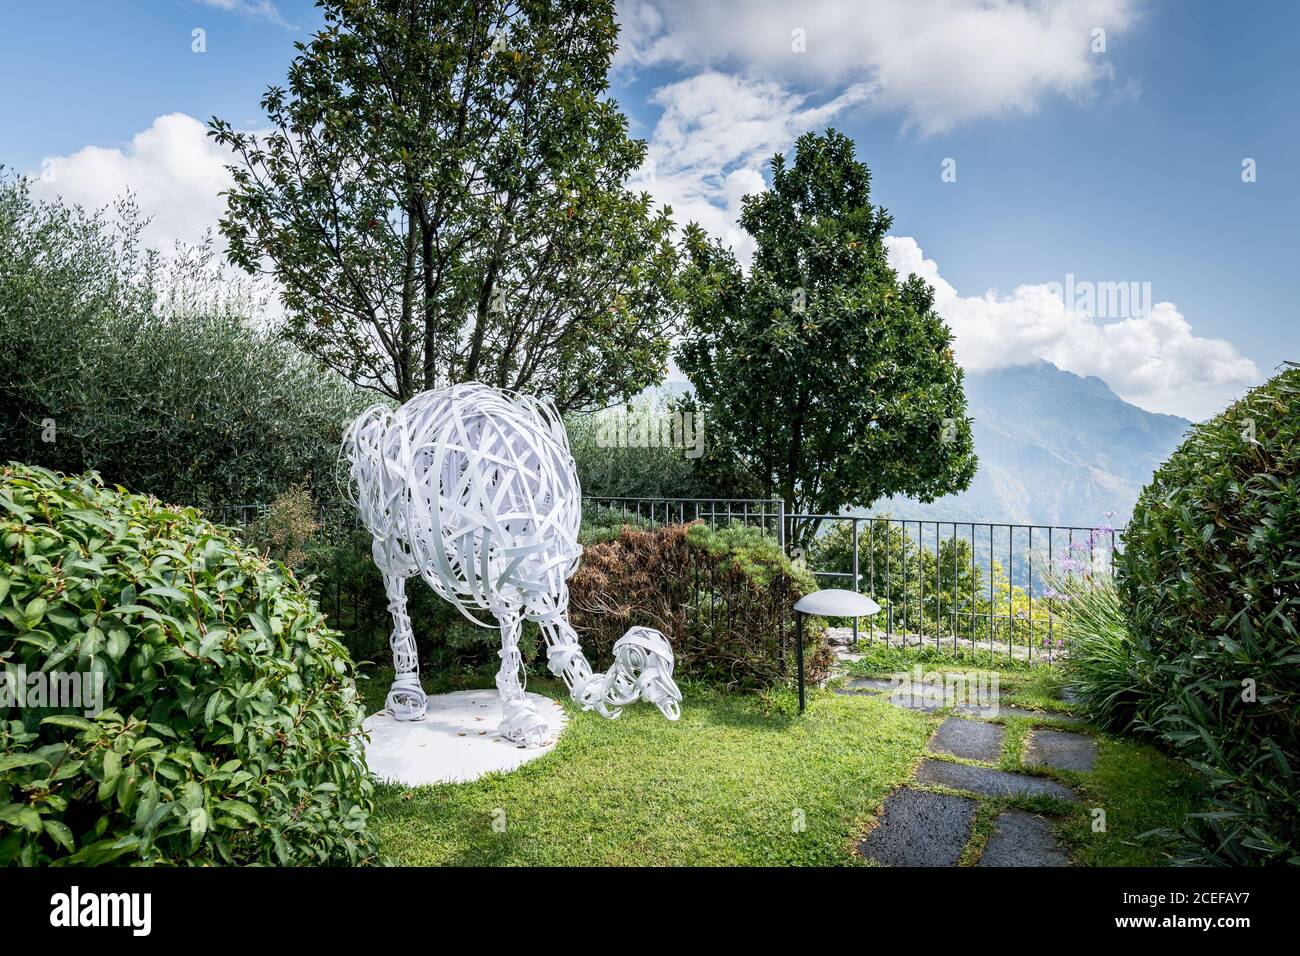 Aufnahmen von den üppigen Gärten und atemberaubende Ausblicke vom berühmten Luxushotel Belmond Hotel Caruso in Ravello, Amalfiküste, Italien. Stockfoto